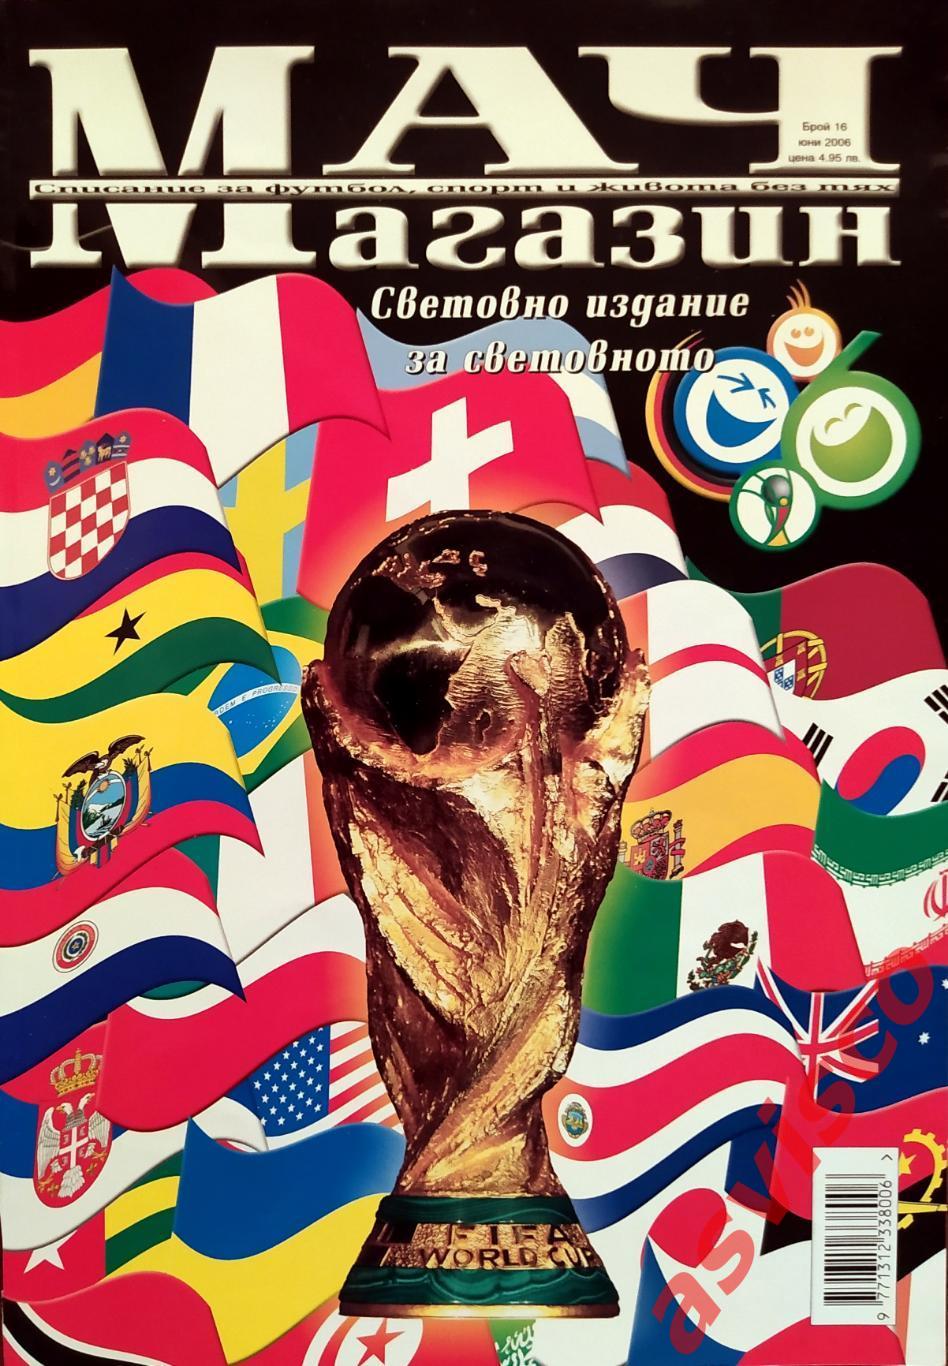 Чемпионат Мира по футболу в Германии 2006 года. Представление участников.